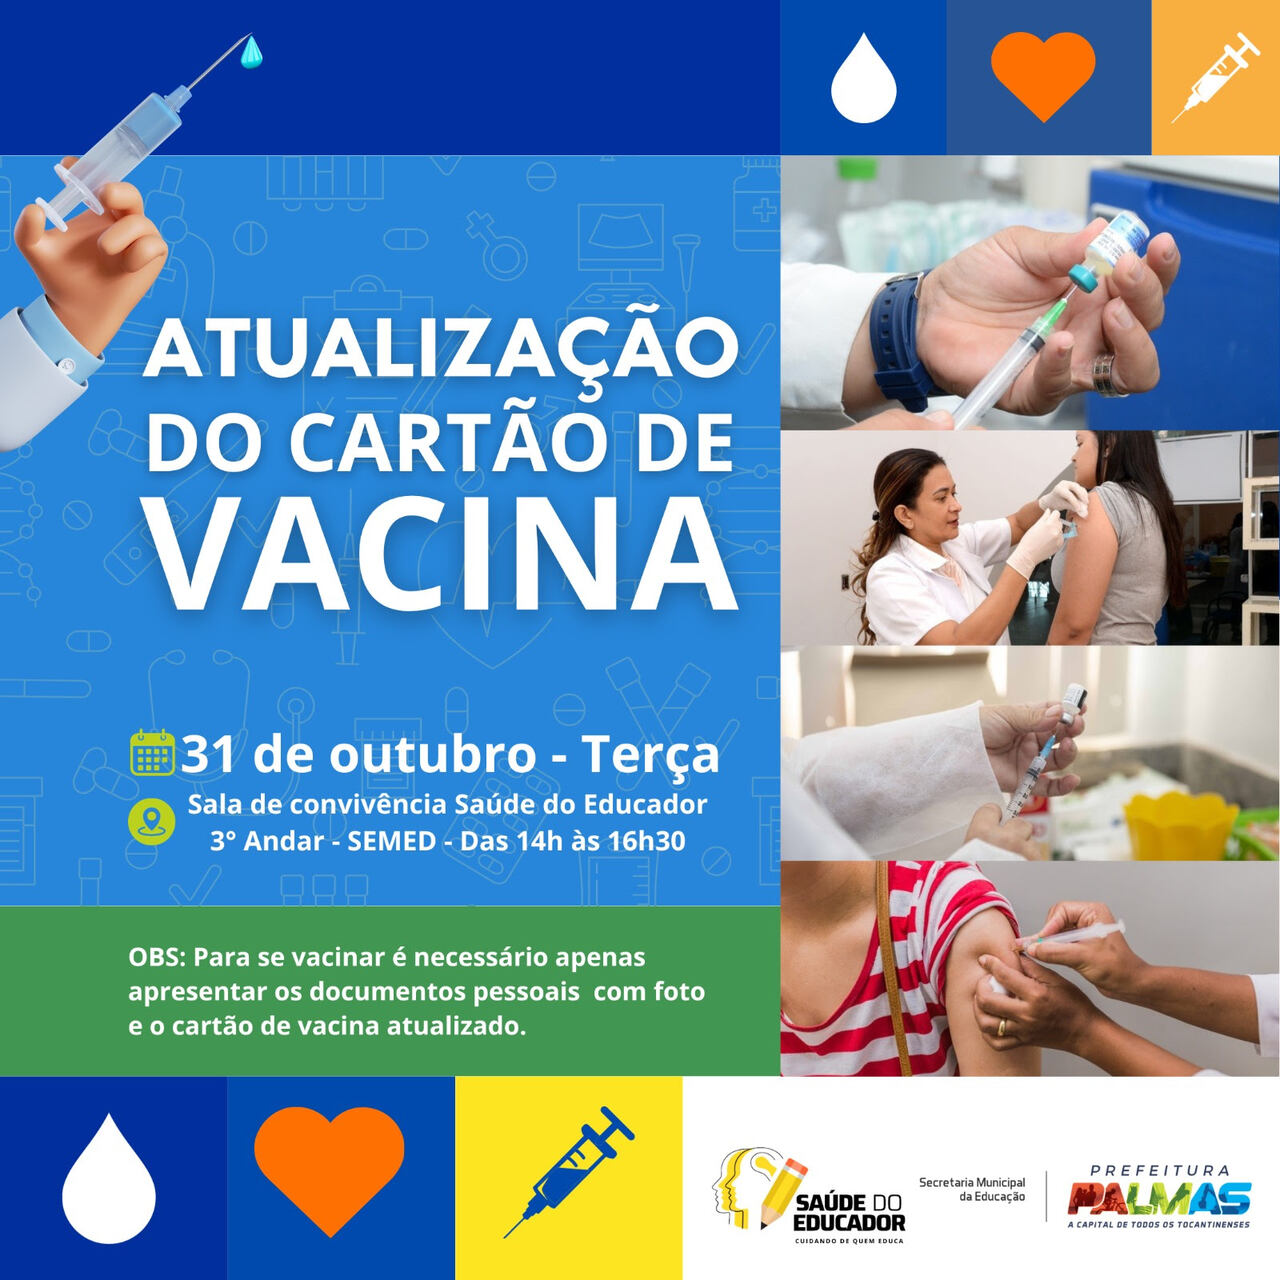 Cartão de vacina dos servidores da Educação de Palmas pode ser atualizado nesta terça (31); confira